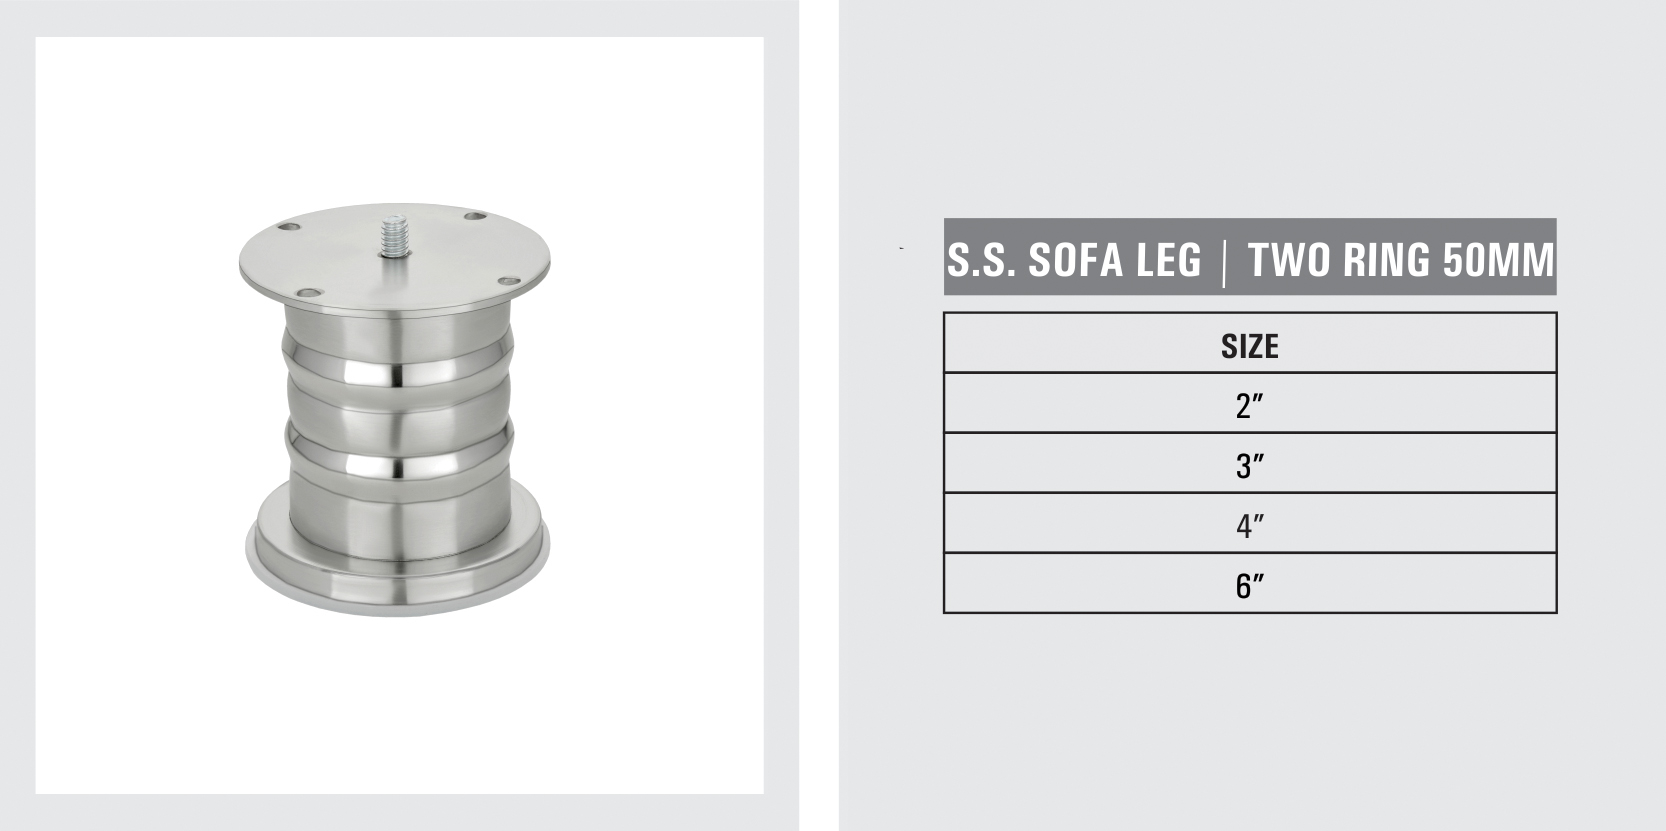 Sofa Legs | Bed fitting | Kaizon Hardware